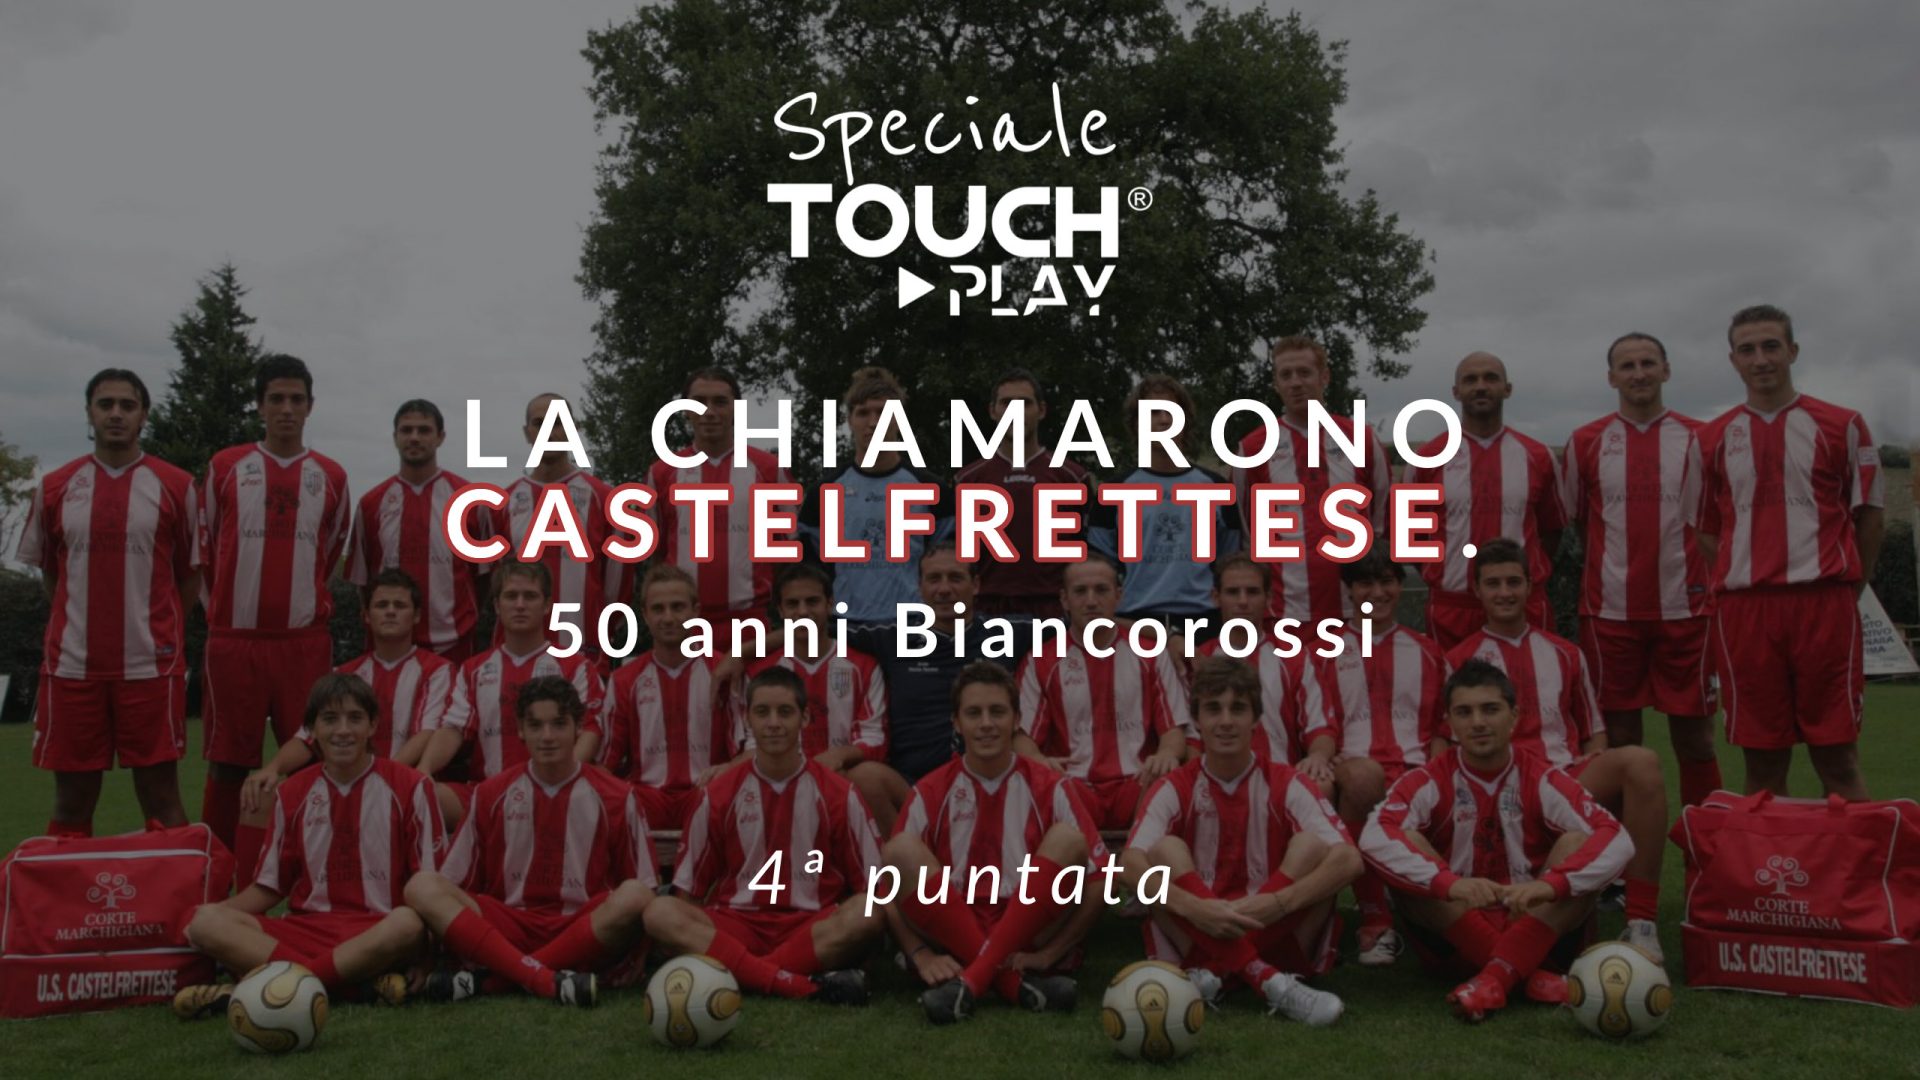 Speciale Touch – La chiamarono Castelfrettese – Puntata 4